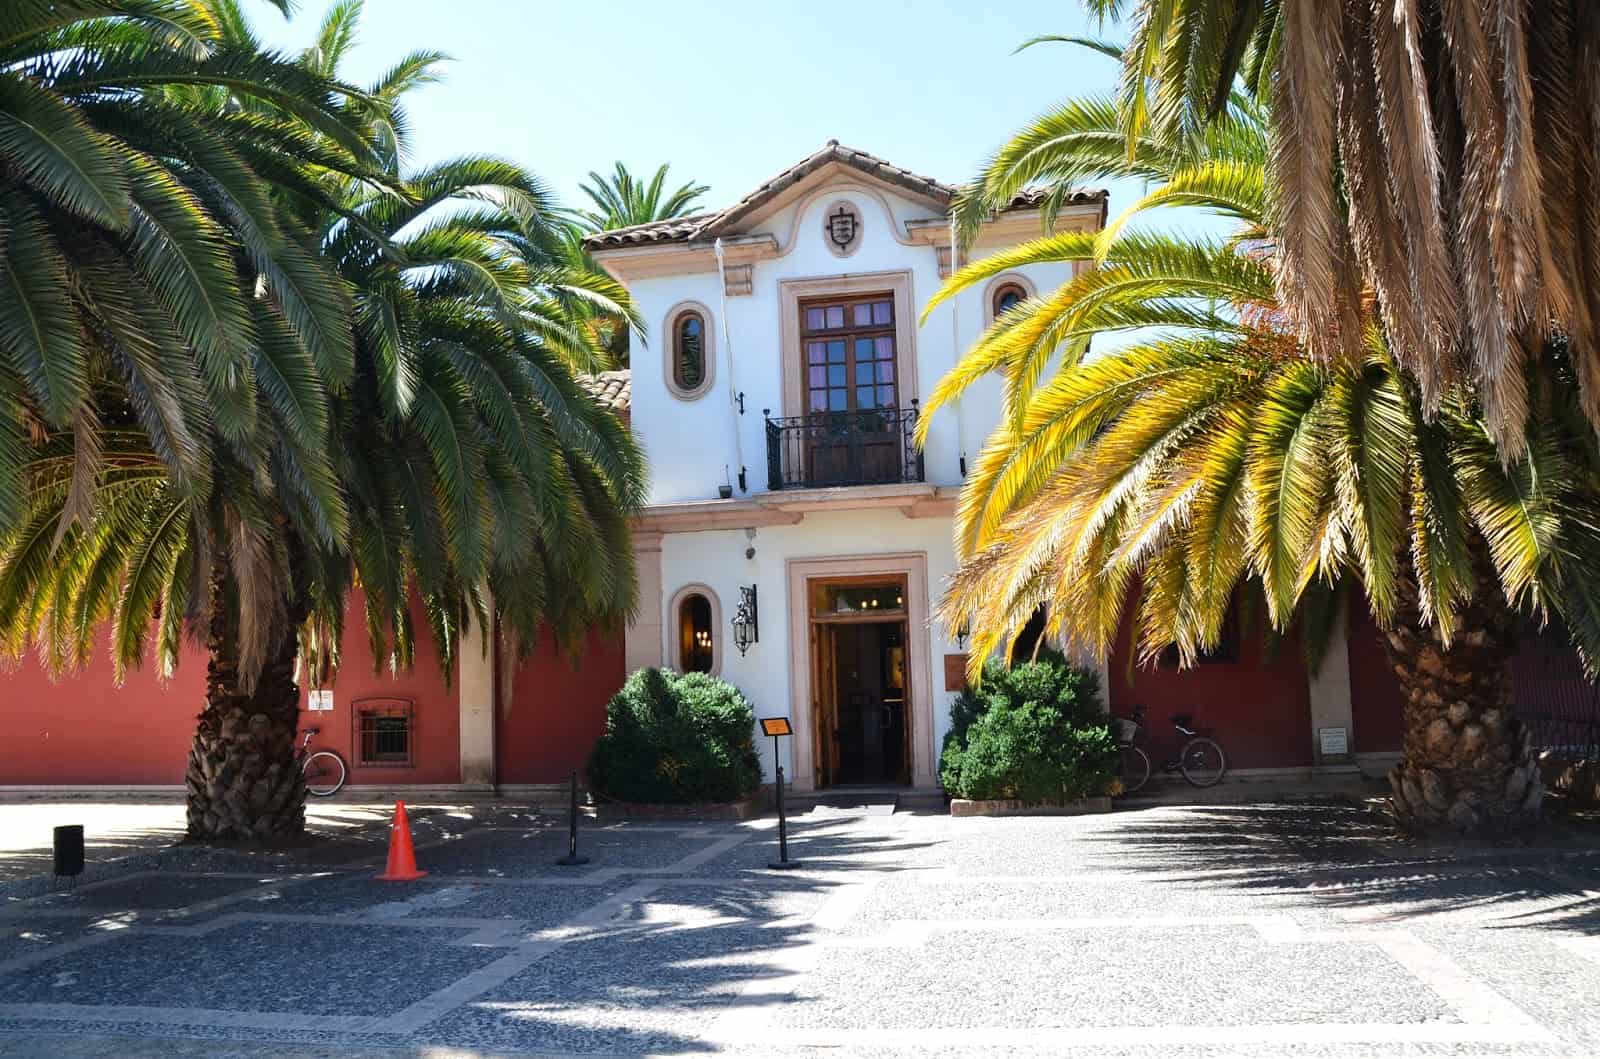 Colchagua Museum in Santa Cruz, Chile